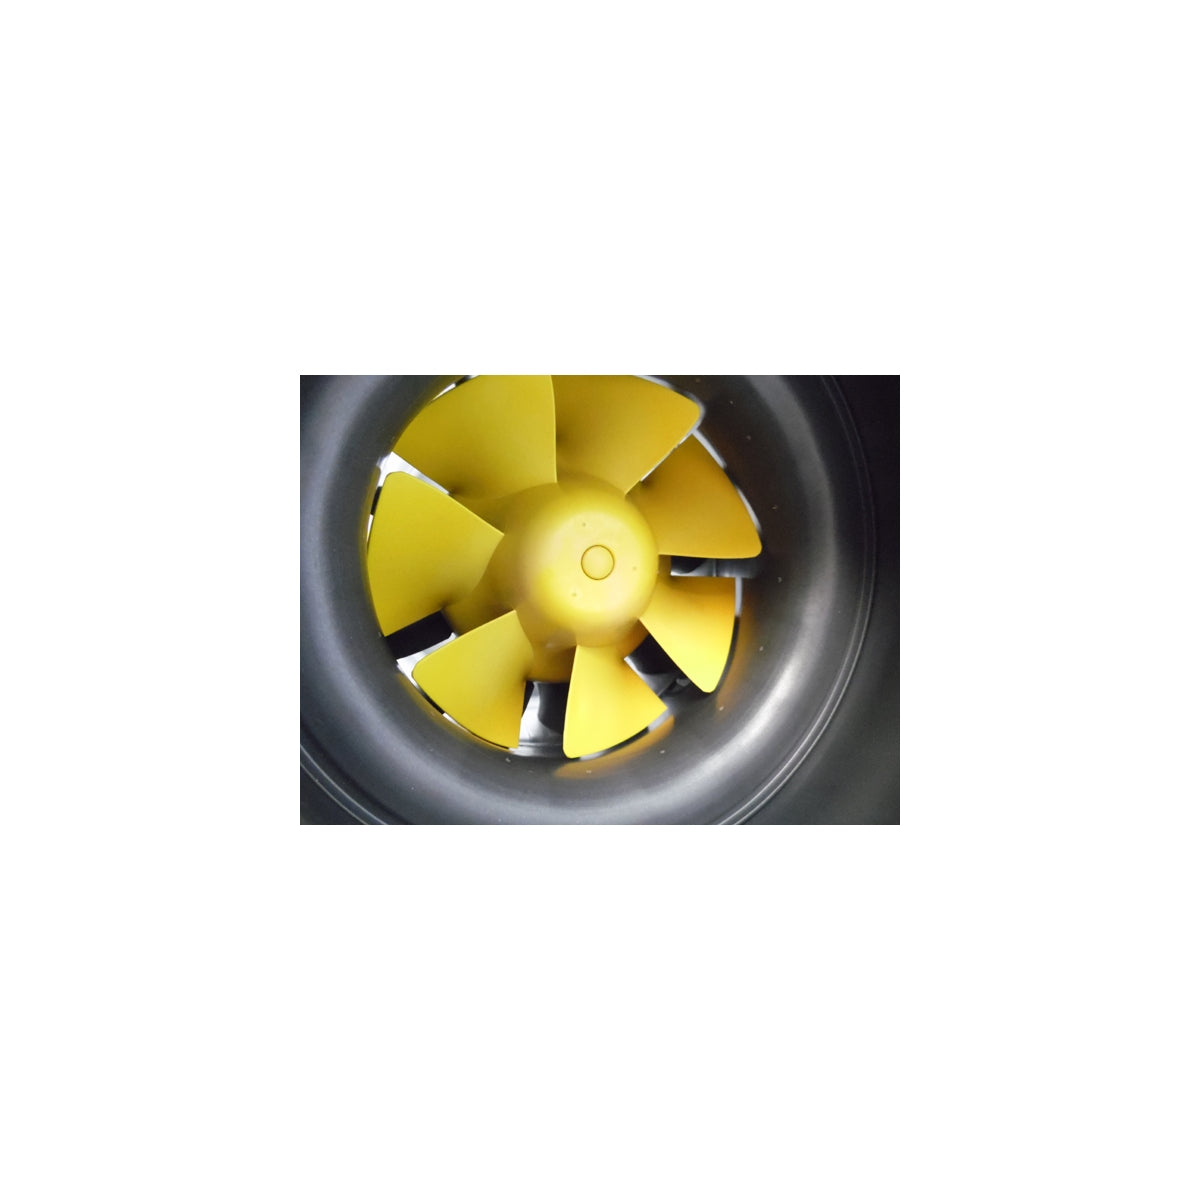 MAX-Fan Pro 250 Absaugung – 1470 und 1660 m3/h – Can-Fan